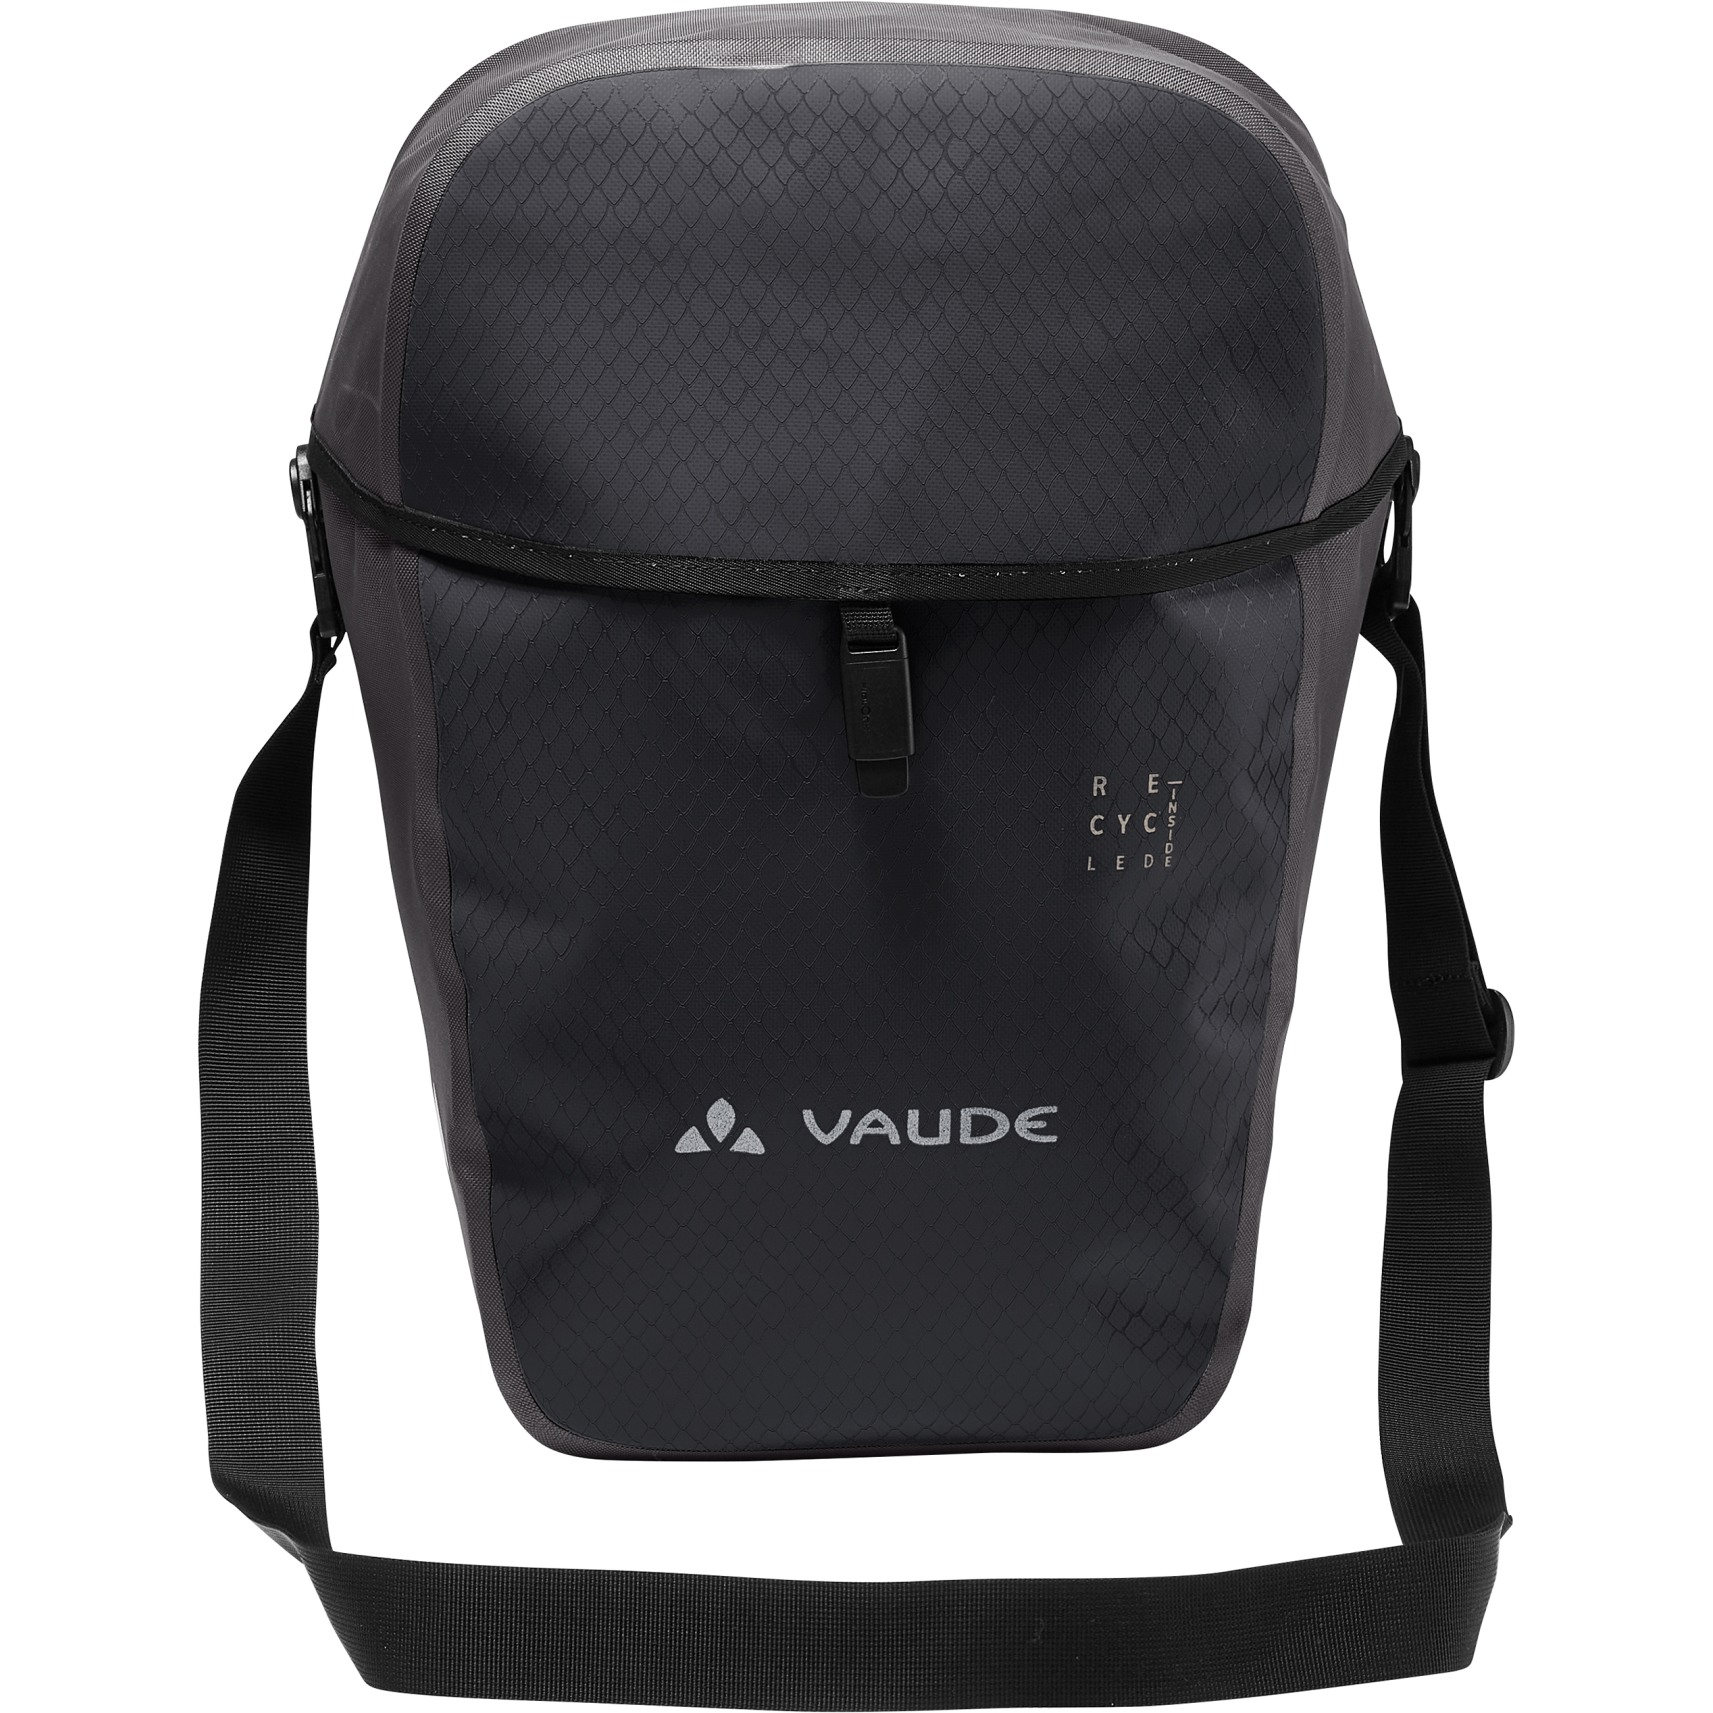 Productfoto van Vaude Aqua Commute Single Tas voor de Achterkant 26L - black